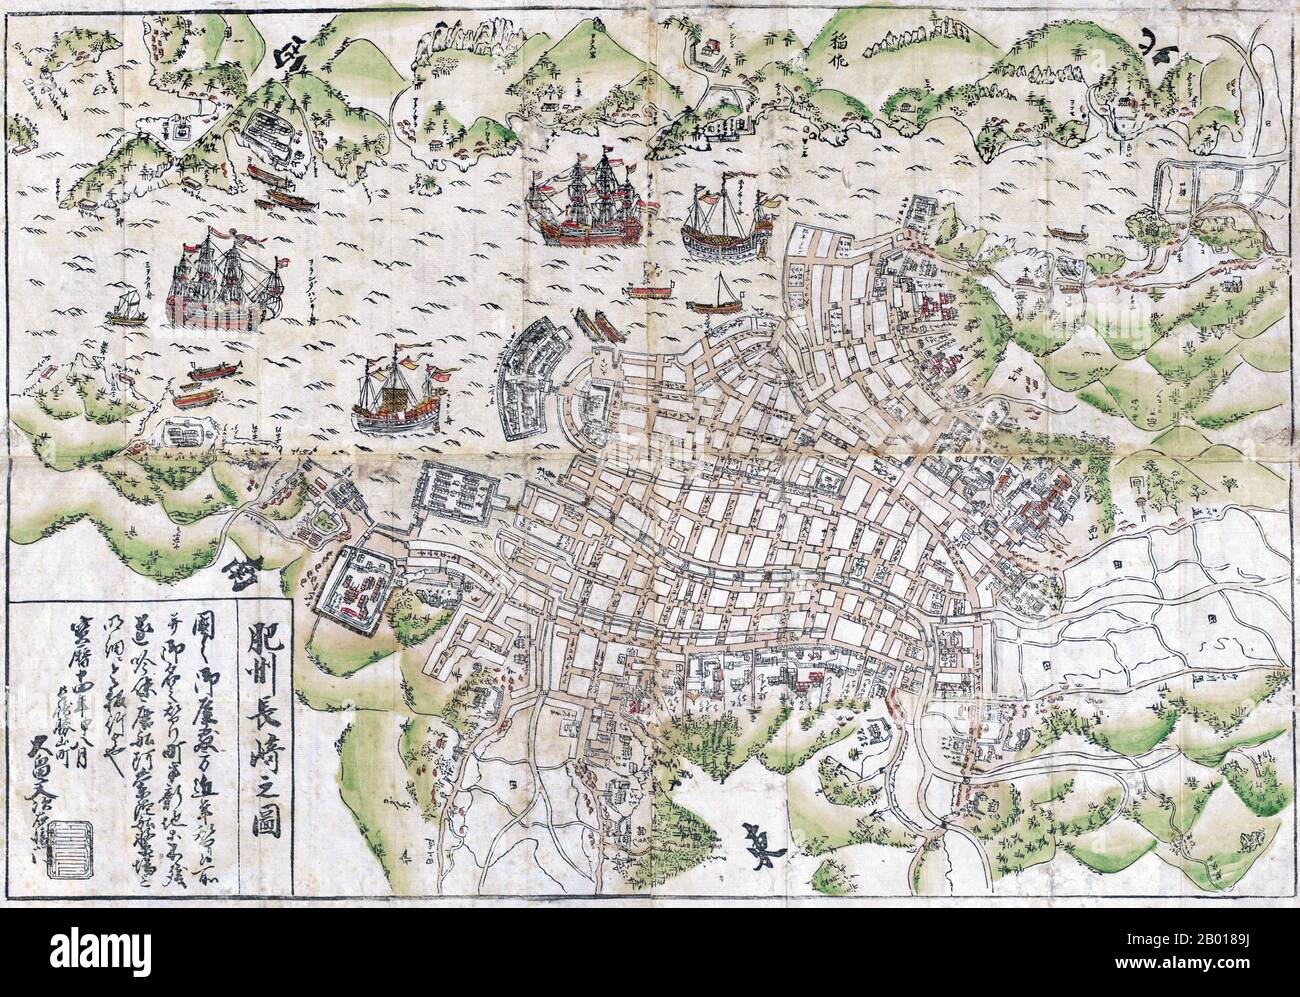 Japon : carte japonaise du port de Nagasaki et de l'île de Dejima. L'indicateur Nord se trouve dans le coin supérieur droit de la carte. 1764. Dejima (littéralement «sortie de l'île»; Dutch: Desjima ou Deshima, parfois latinisé comme Décima ou Dezima) était une petite île artificielle en forme de ventilateur construite dans la baie de Nagasaki en 1634. Cette île, qui a été formée en creusant un canal à travers une petite péninsule, est restée comme le seul lieu de commerce et d'échange direct entre le Japon et le monde extérieur pendant la période Edo. Dejima a été construit pour contraindre les commerçants étrangers dans le cadre de la politique isolationniste du « sakoku ». Banque D'Images